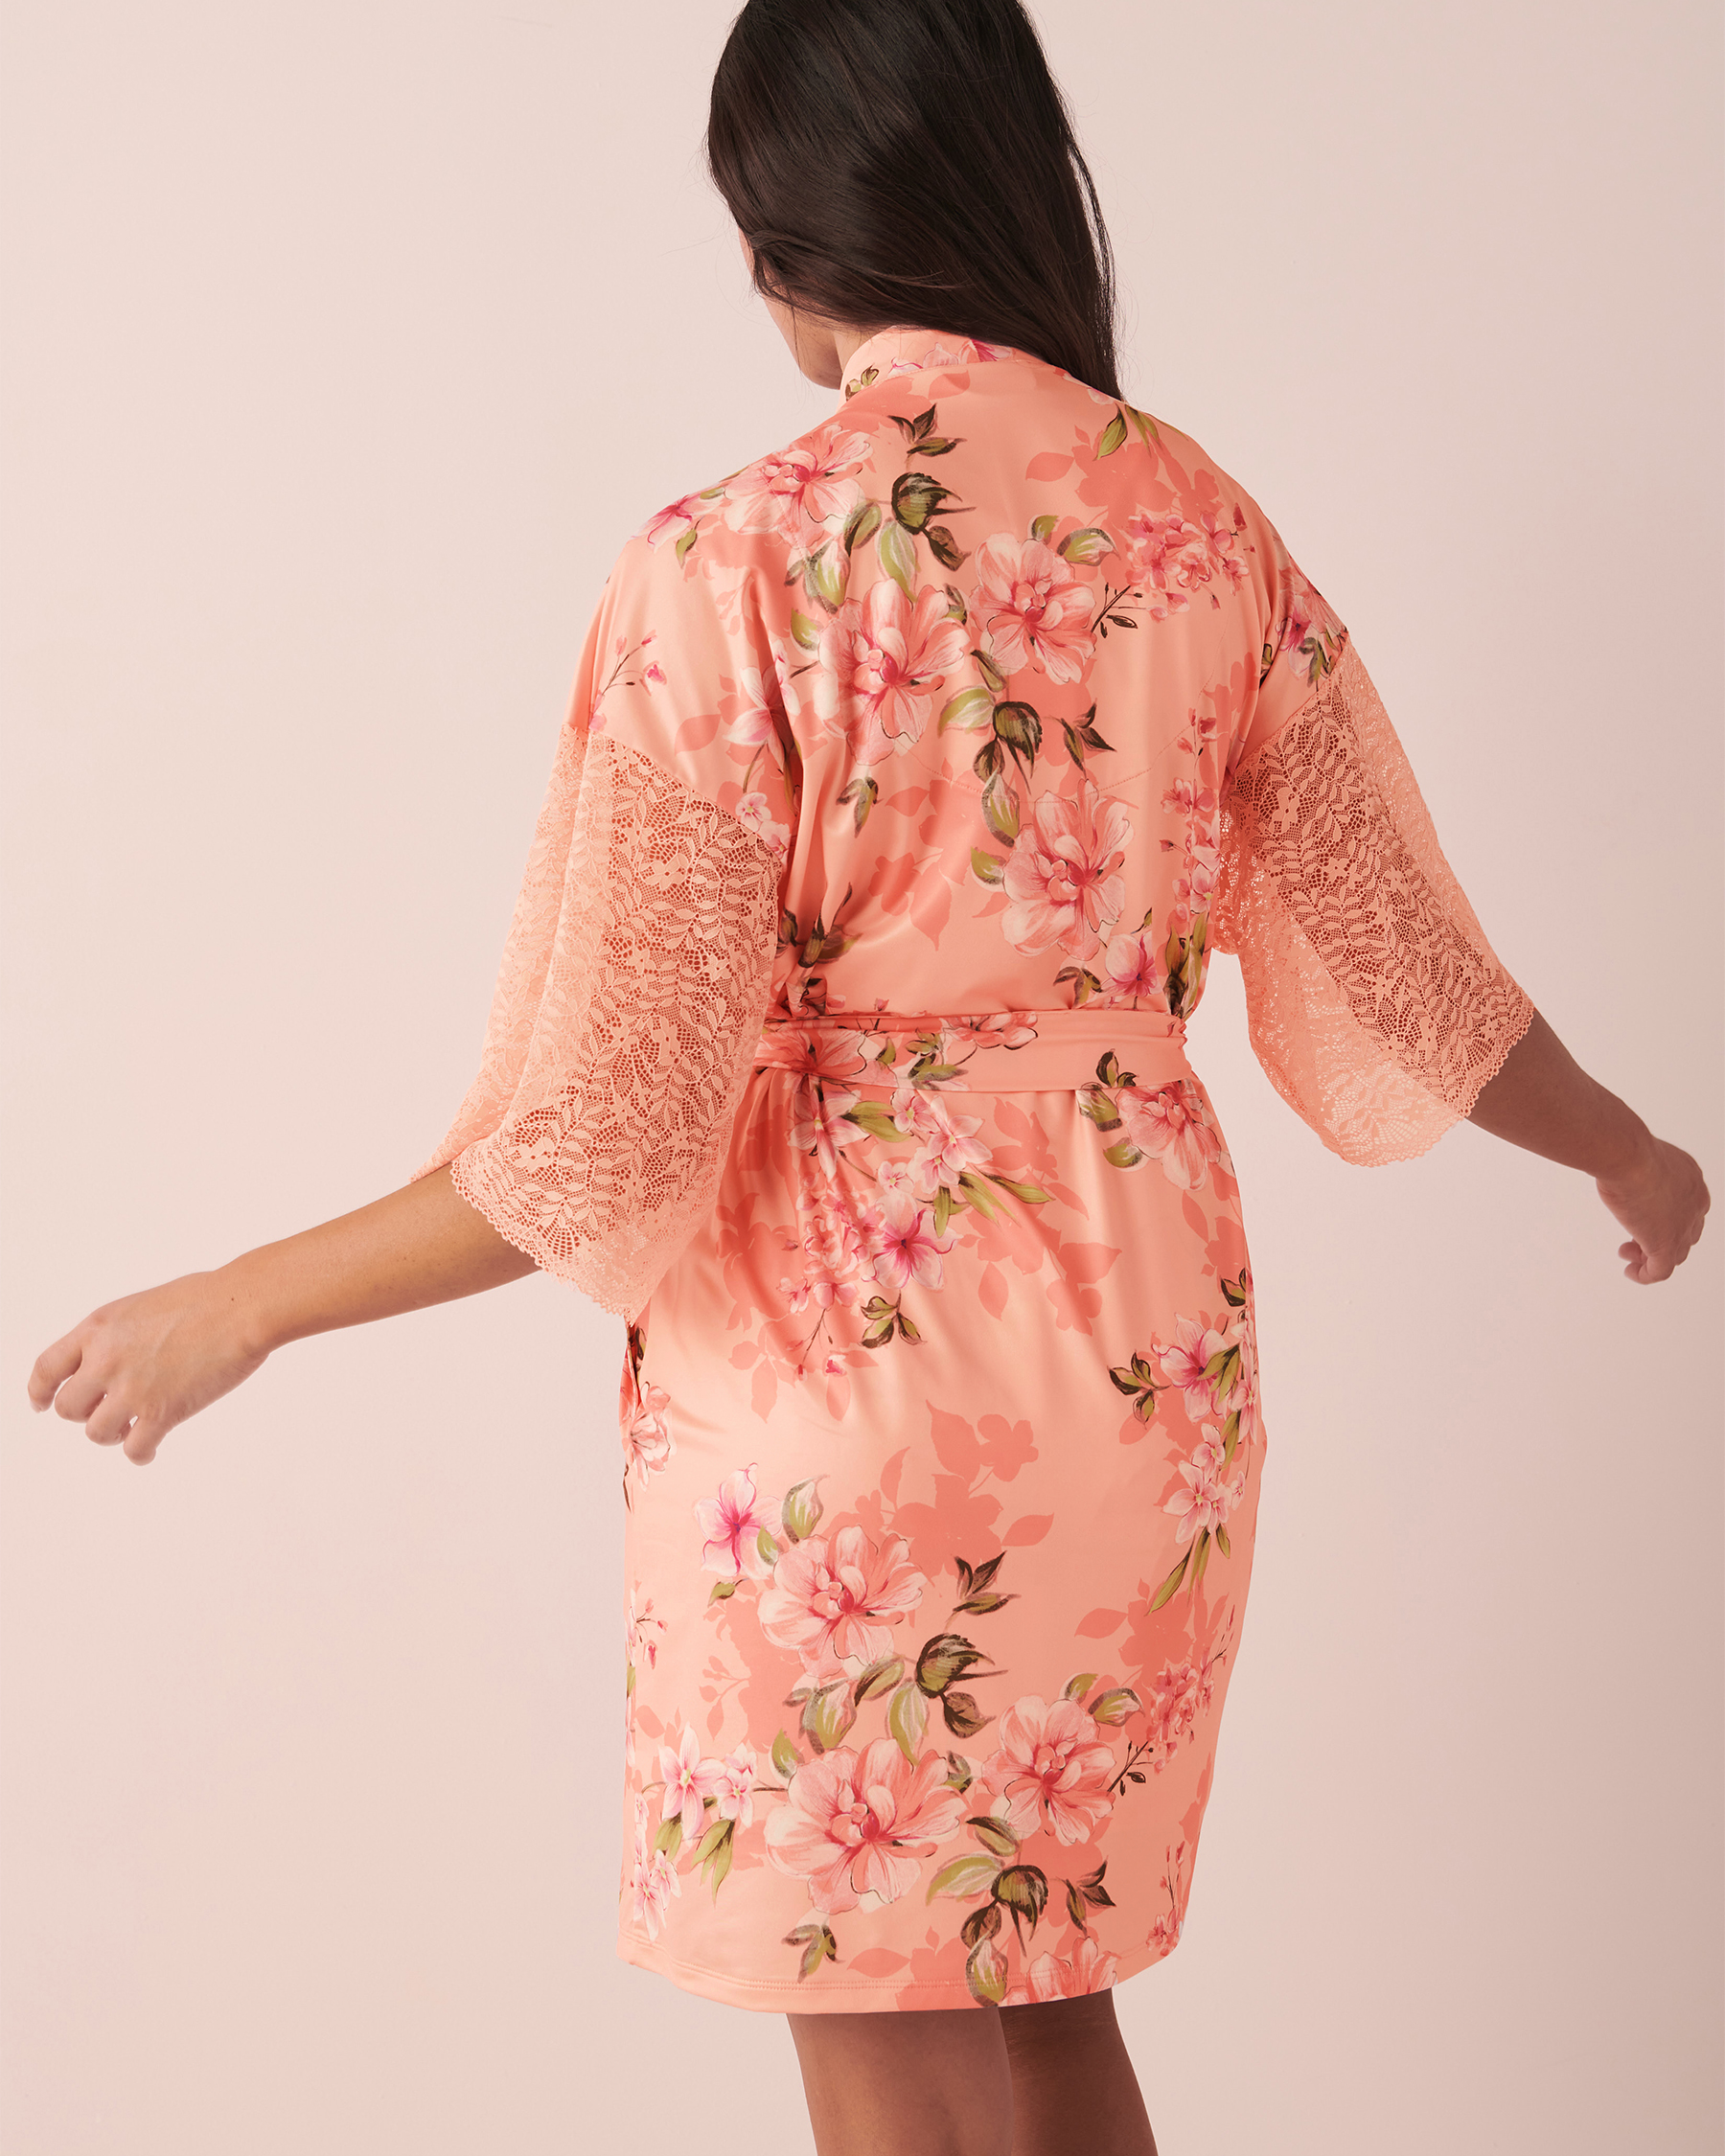 LA VIE EN ROSE Recycled Fibers Lace Trim Kimono Peachy floral 60600050 - View2